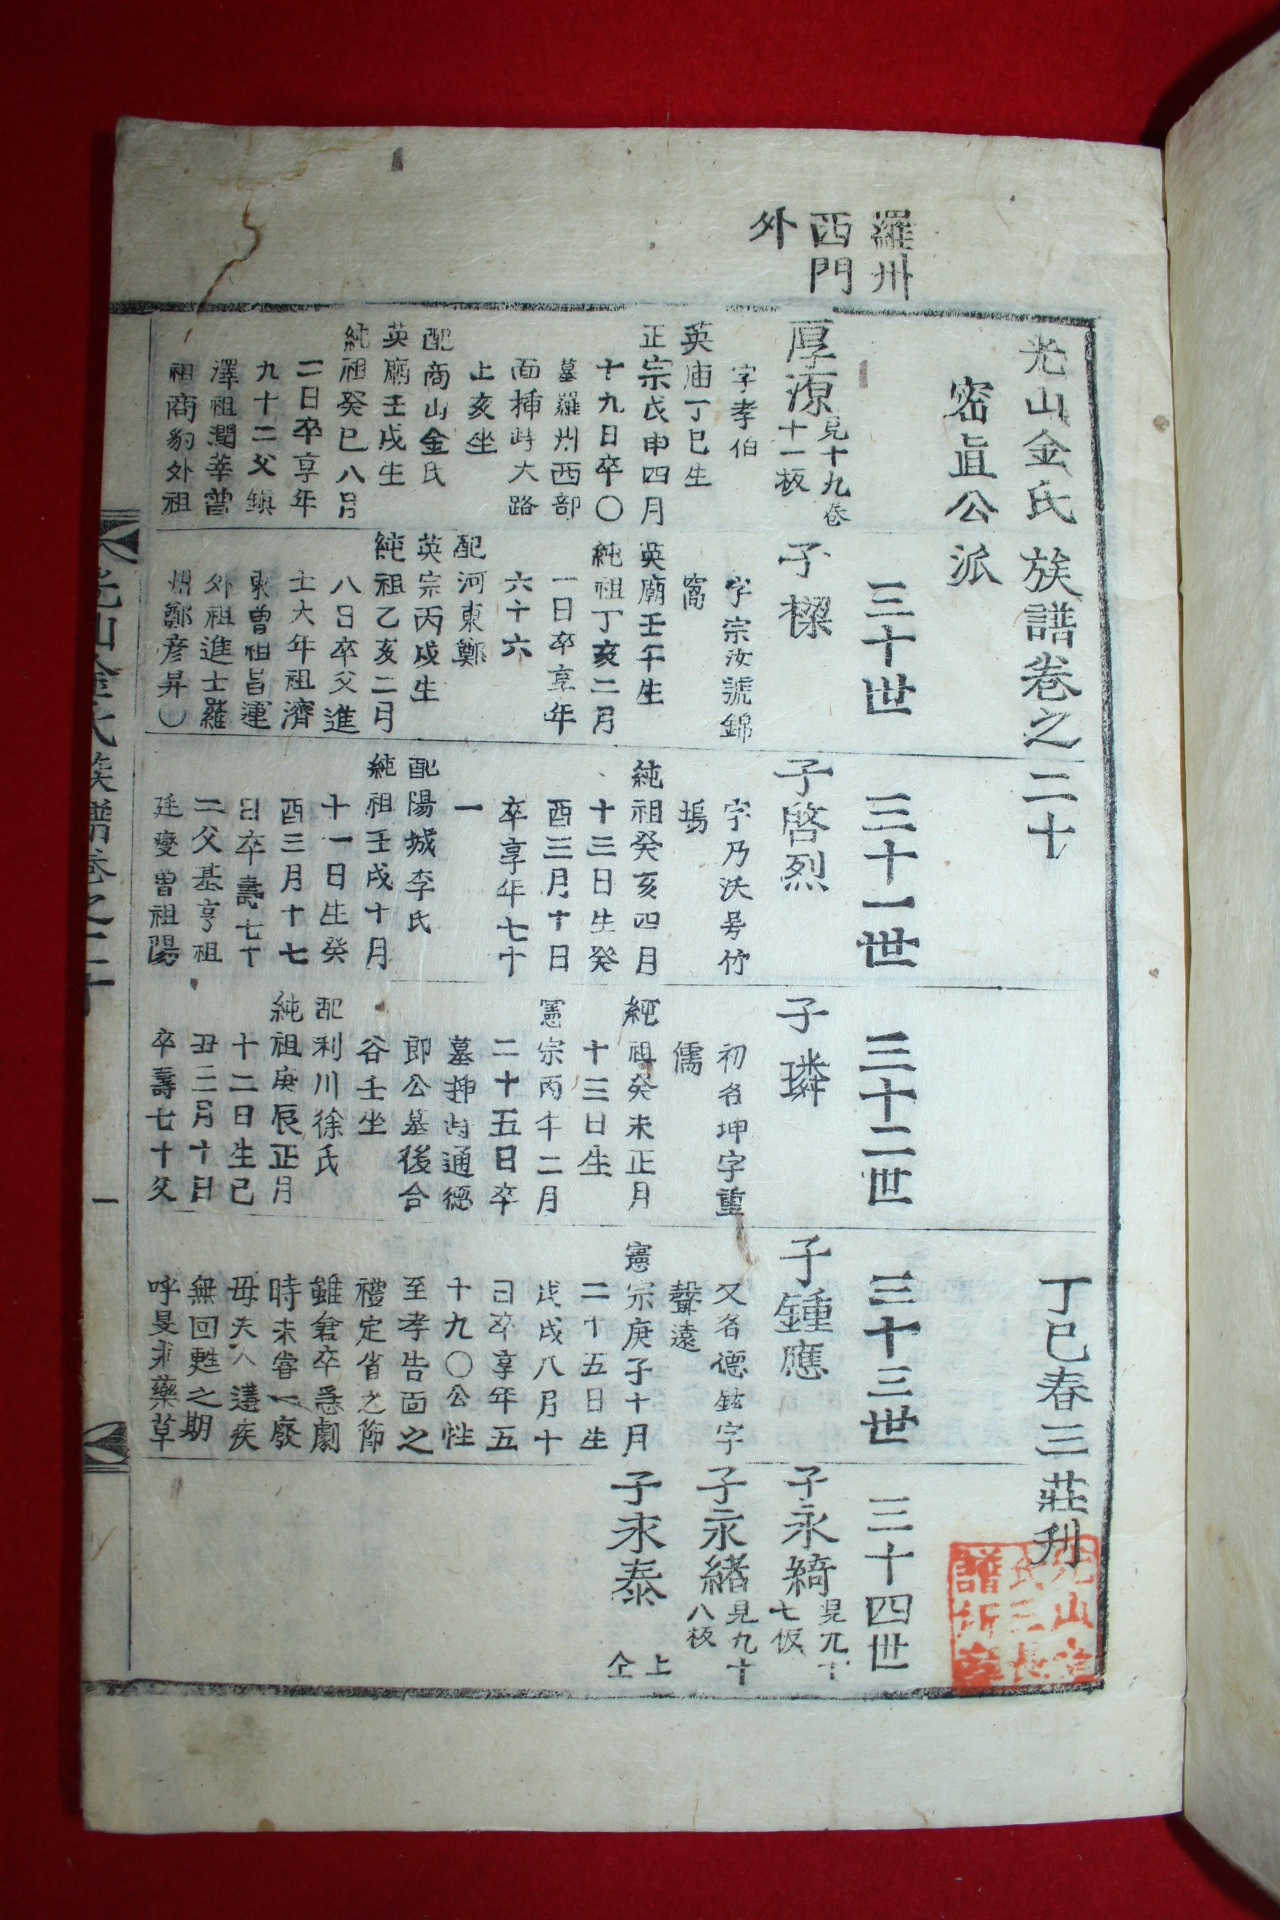 조선시대 목활자본 광산김씨족보(光山金氏族譜) 14책